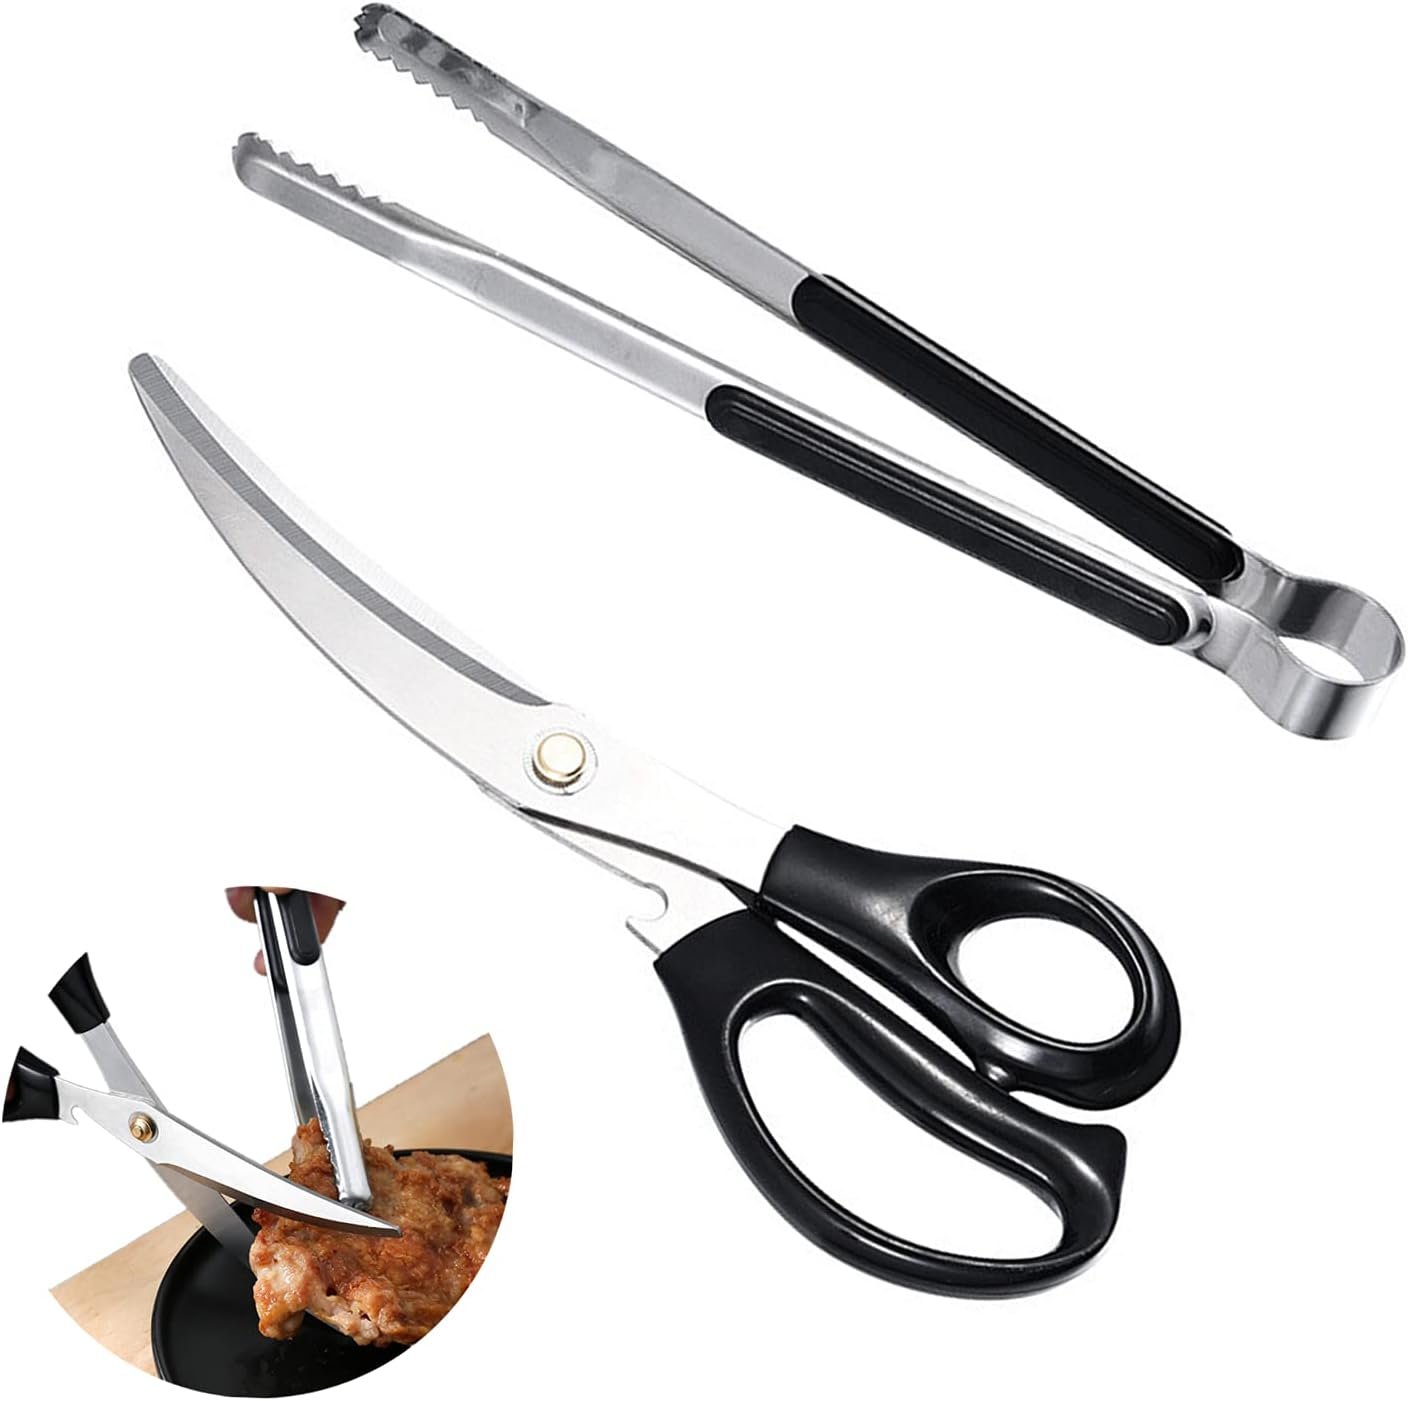 Korean barbecue scissors and clip set, BBQ scissors BBQ tongs, kitchen scissors, cooking scissors,pissa scissors, Ergonomic scissors stainless steel scissors clip for easy use (black)